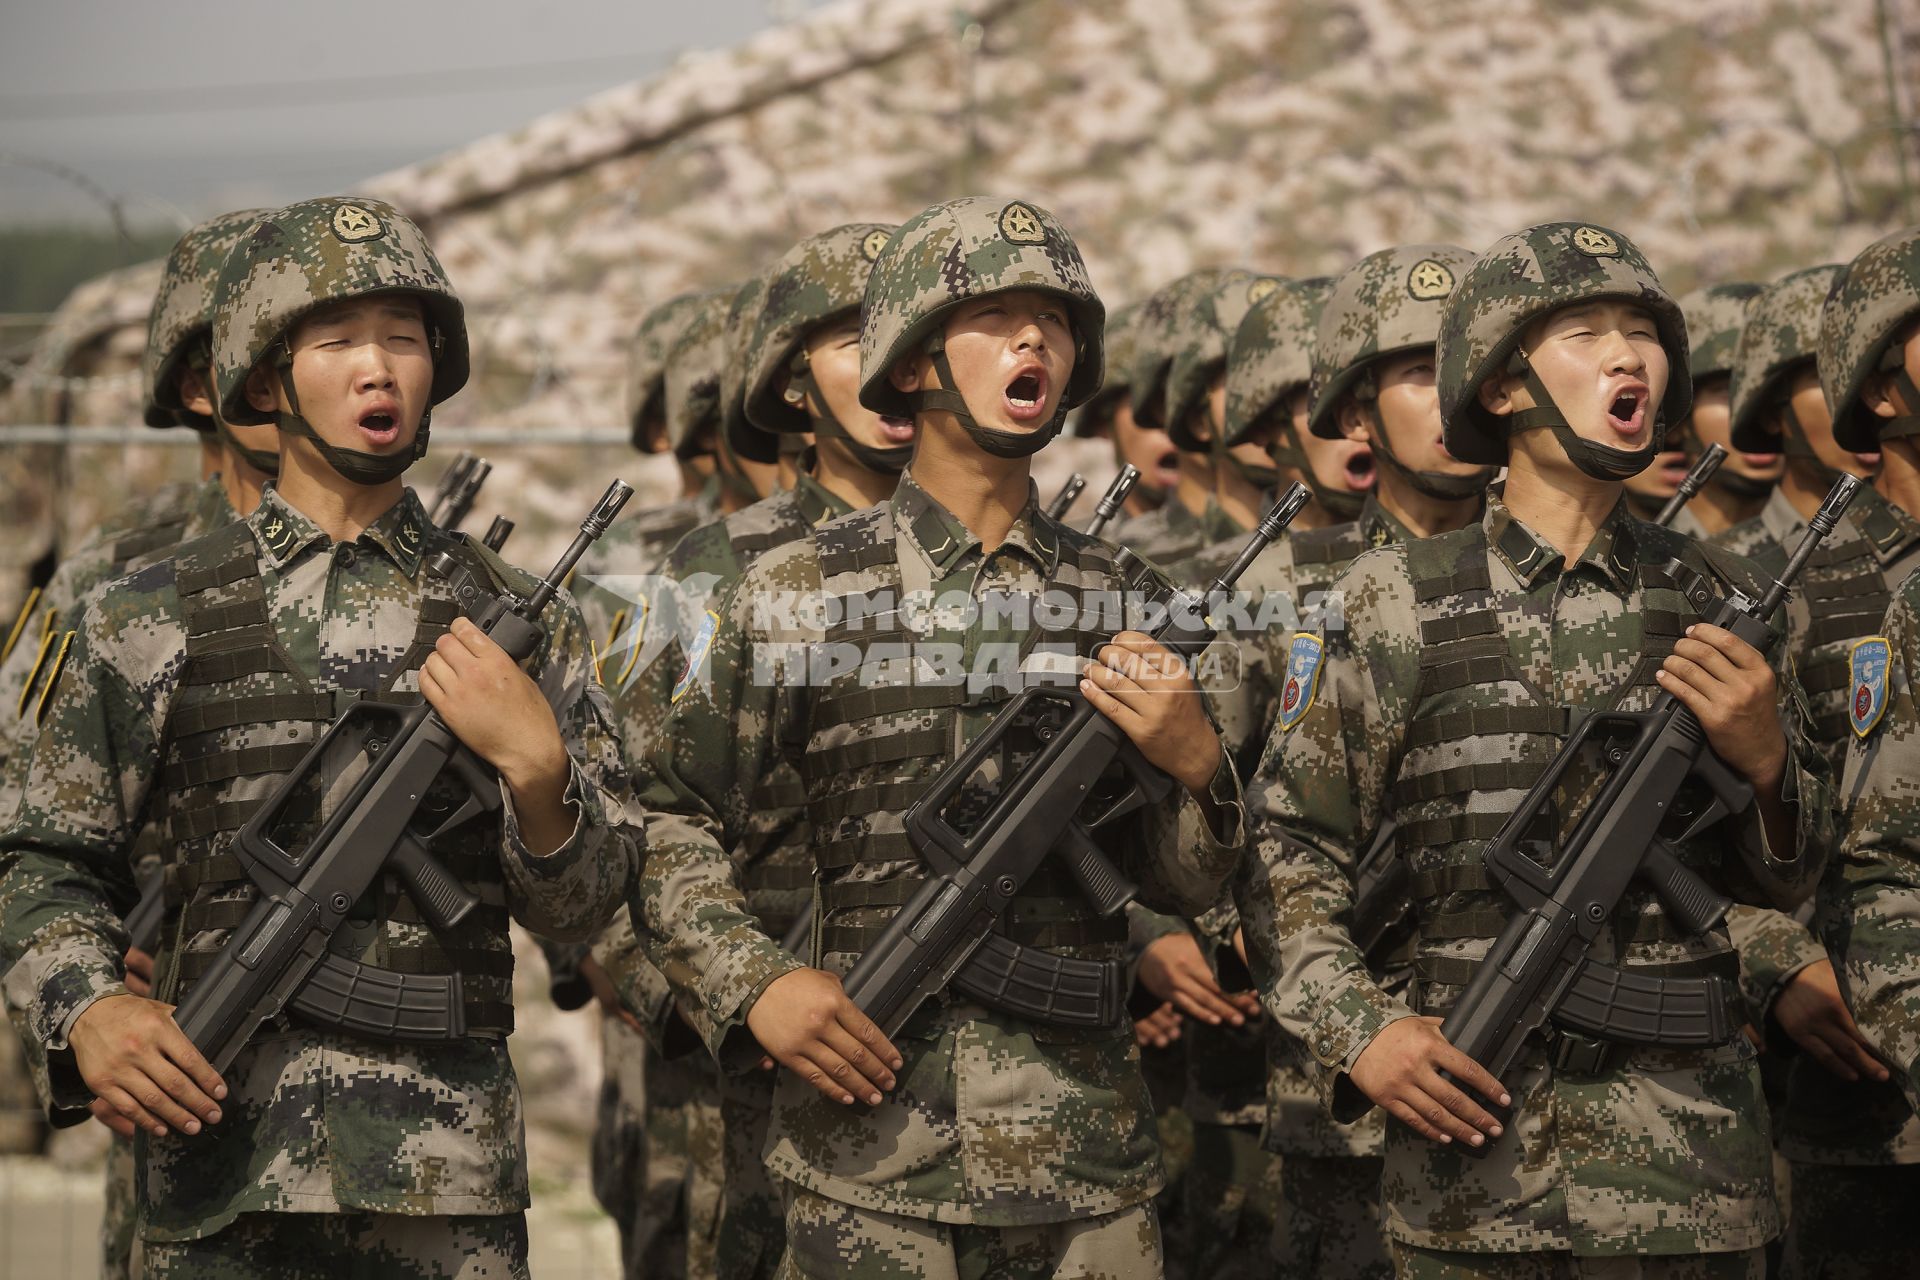 Китайские солдаты НОАК приветствуют командующего в строю  во время проведения Российско-Китайских учений Мирная миссия 2013 на полигоне в Чебаркуле